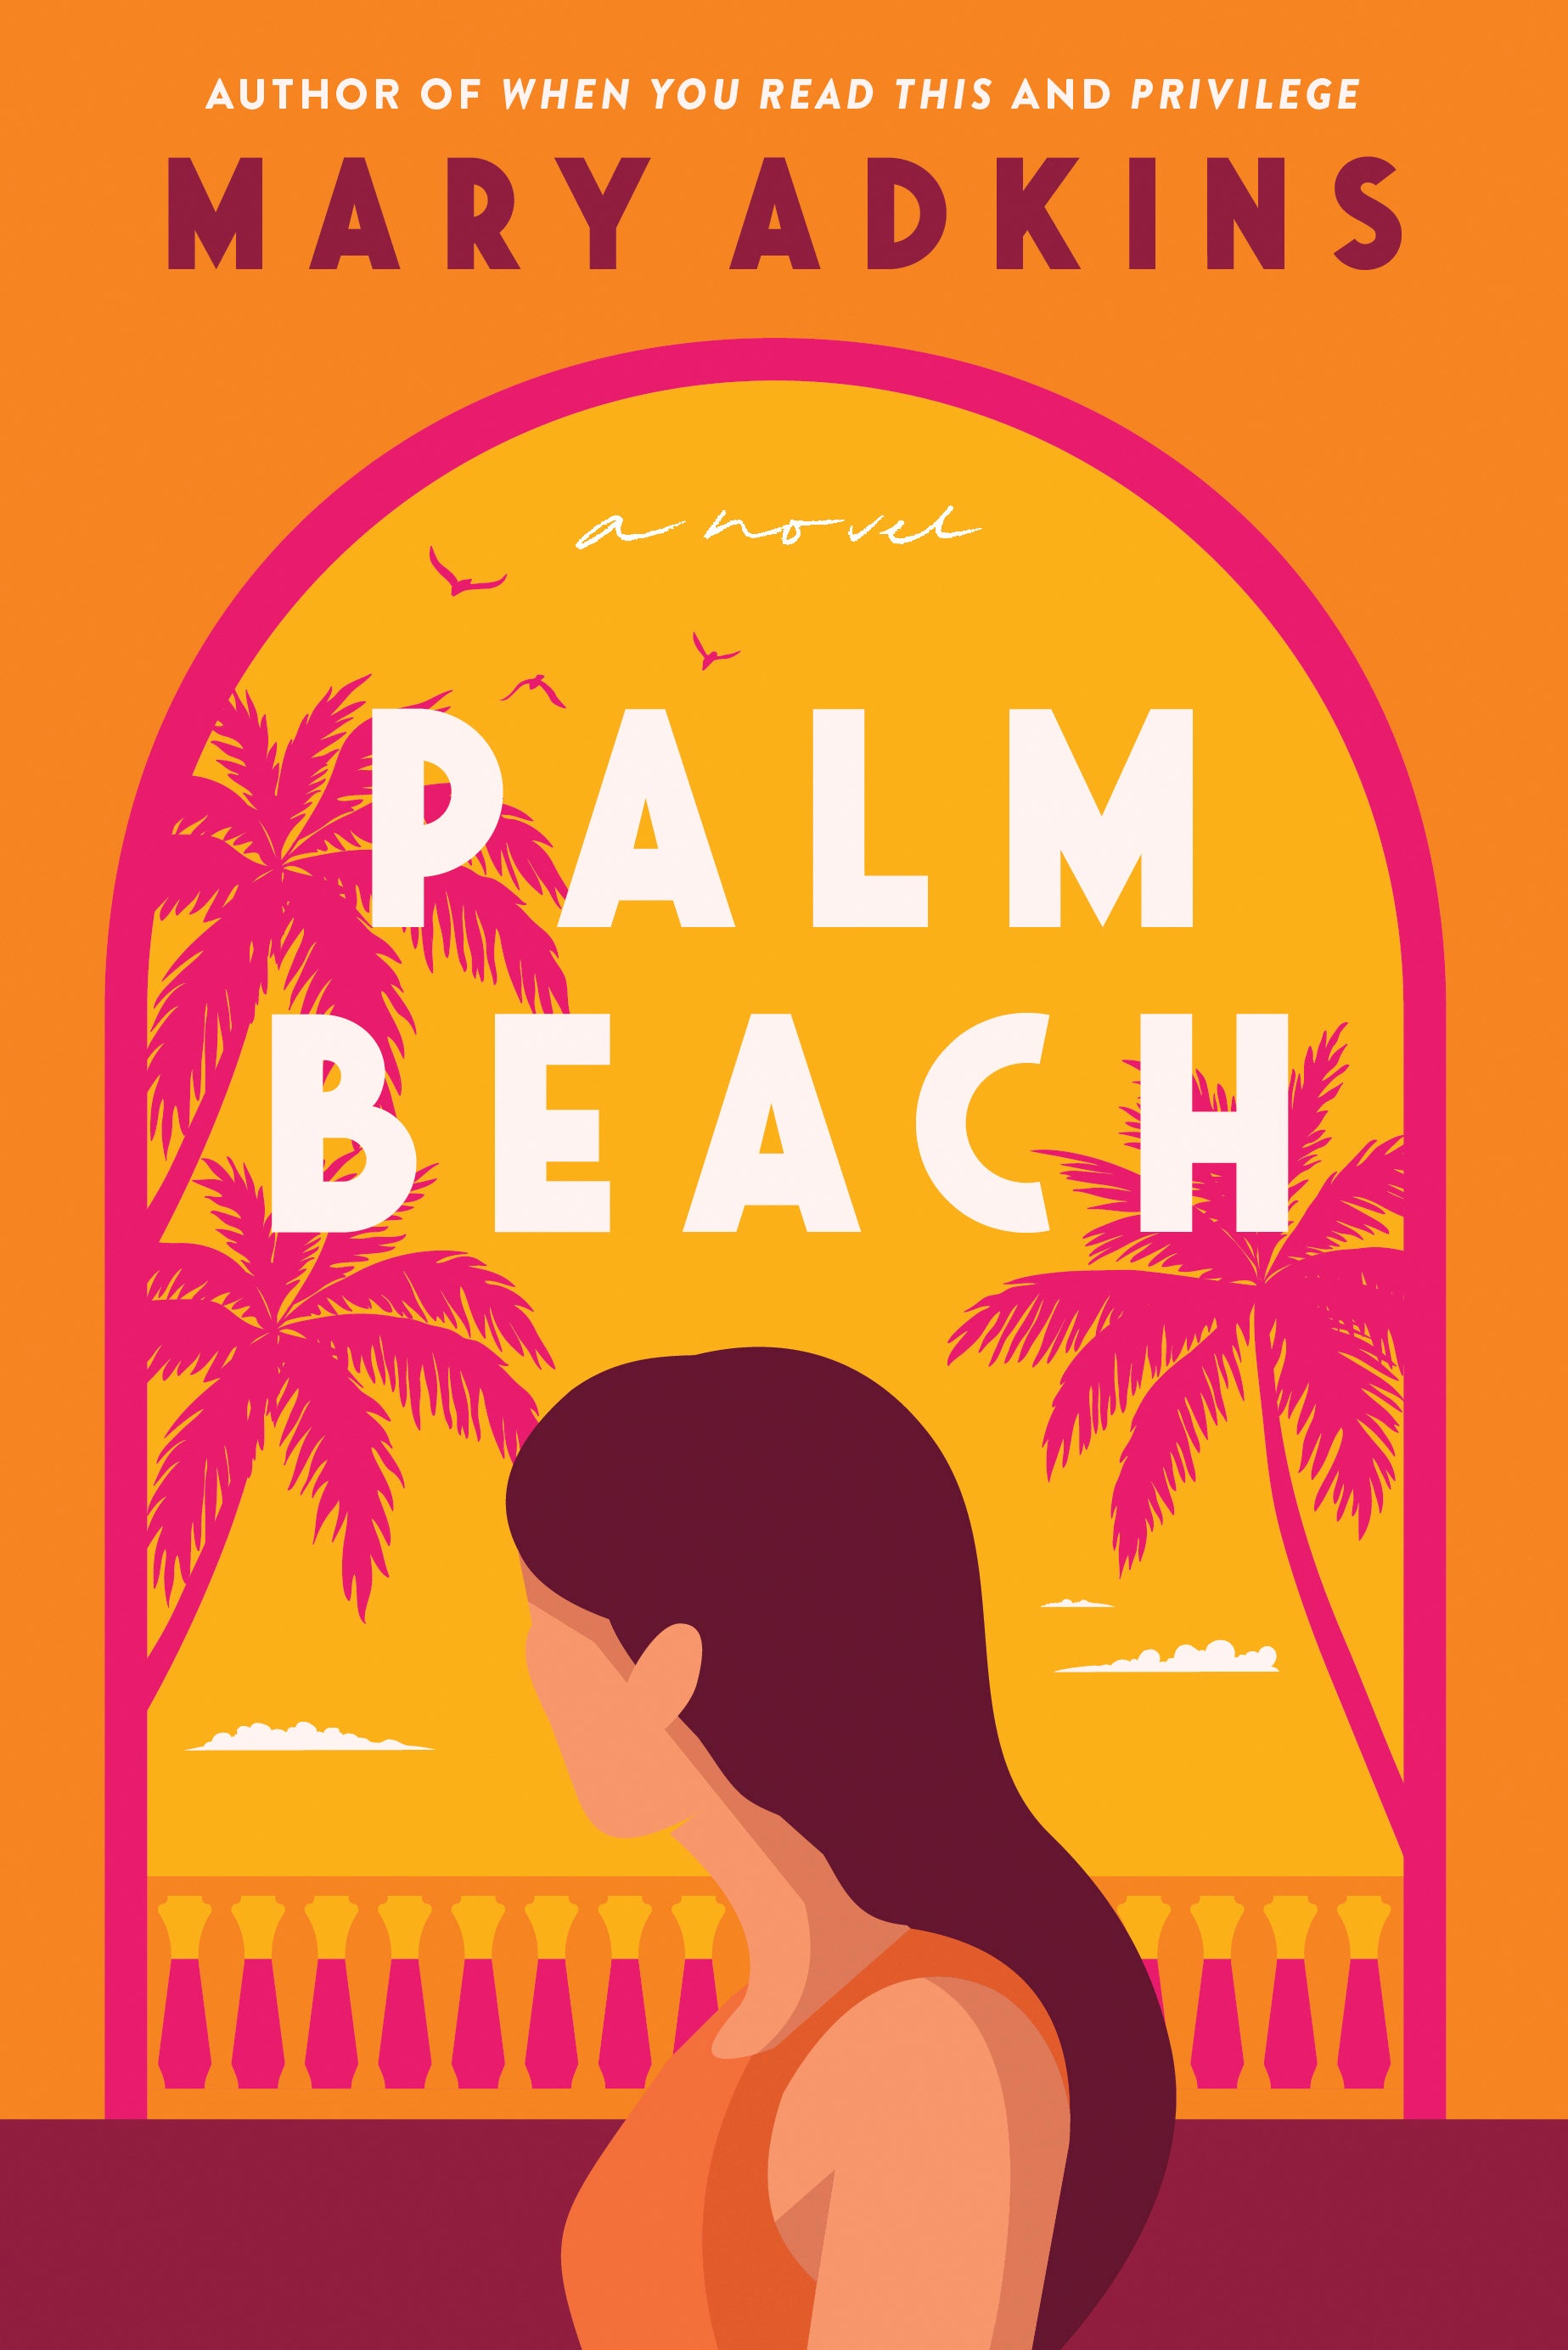 Book Review - Palm Beach